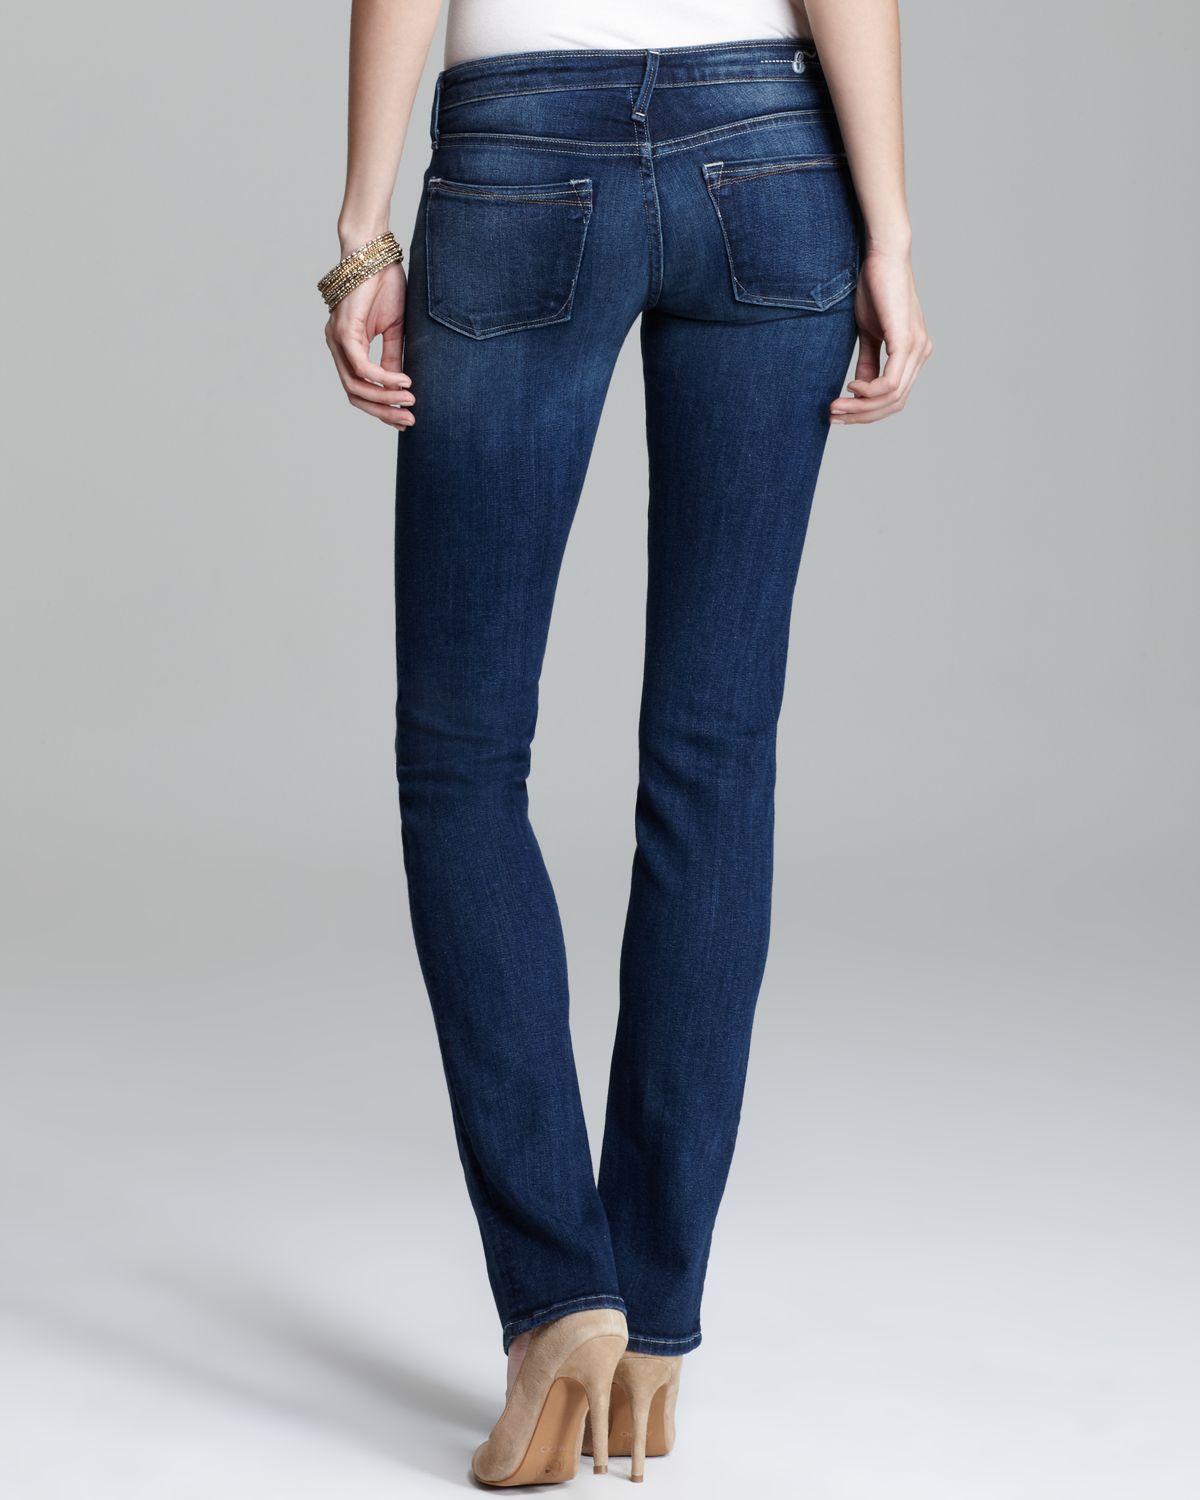 Earnest Sewn Jeans Decca Straight Leg in Anja in Blue - Lyst